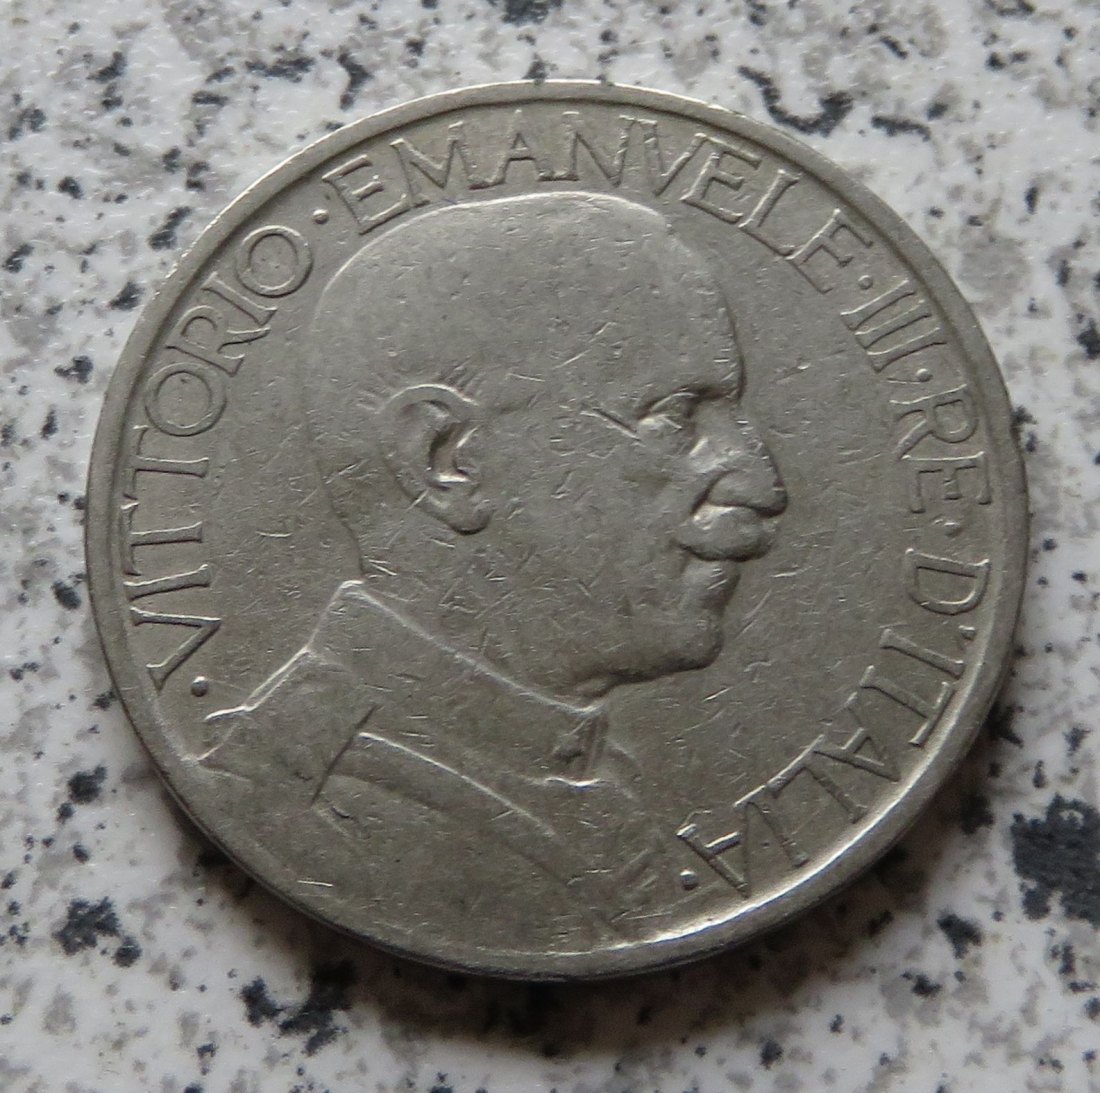  Italien 2 Lire 1924 R   